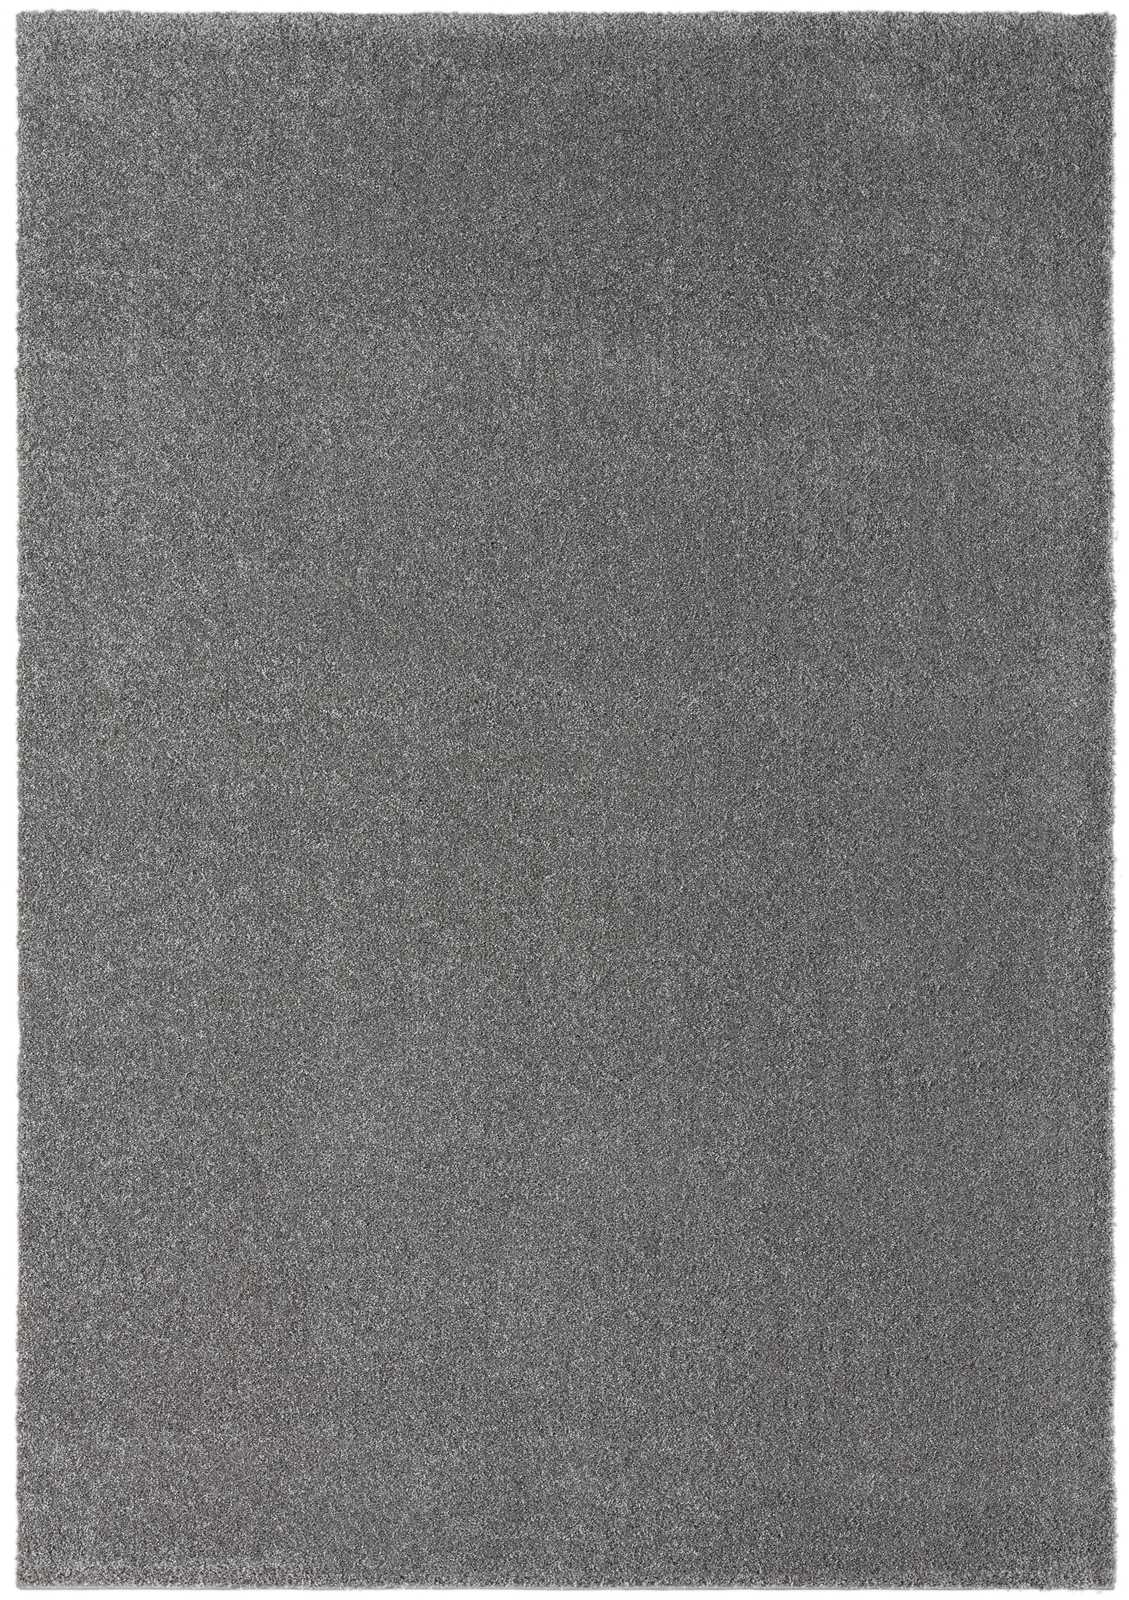             Tapis moelleux à poils courts gris - 200 x 140 cm
        